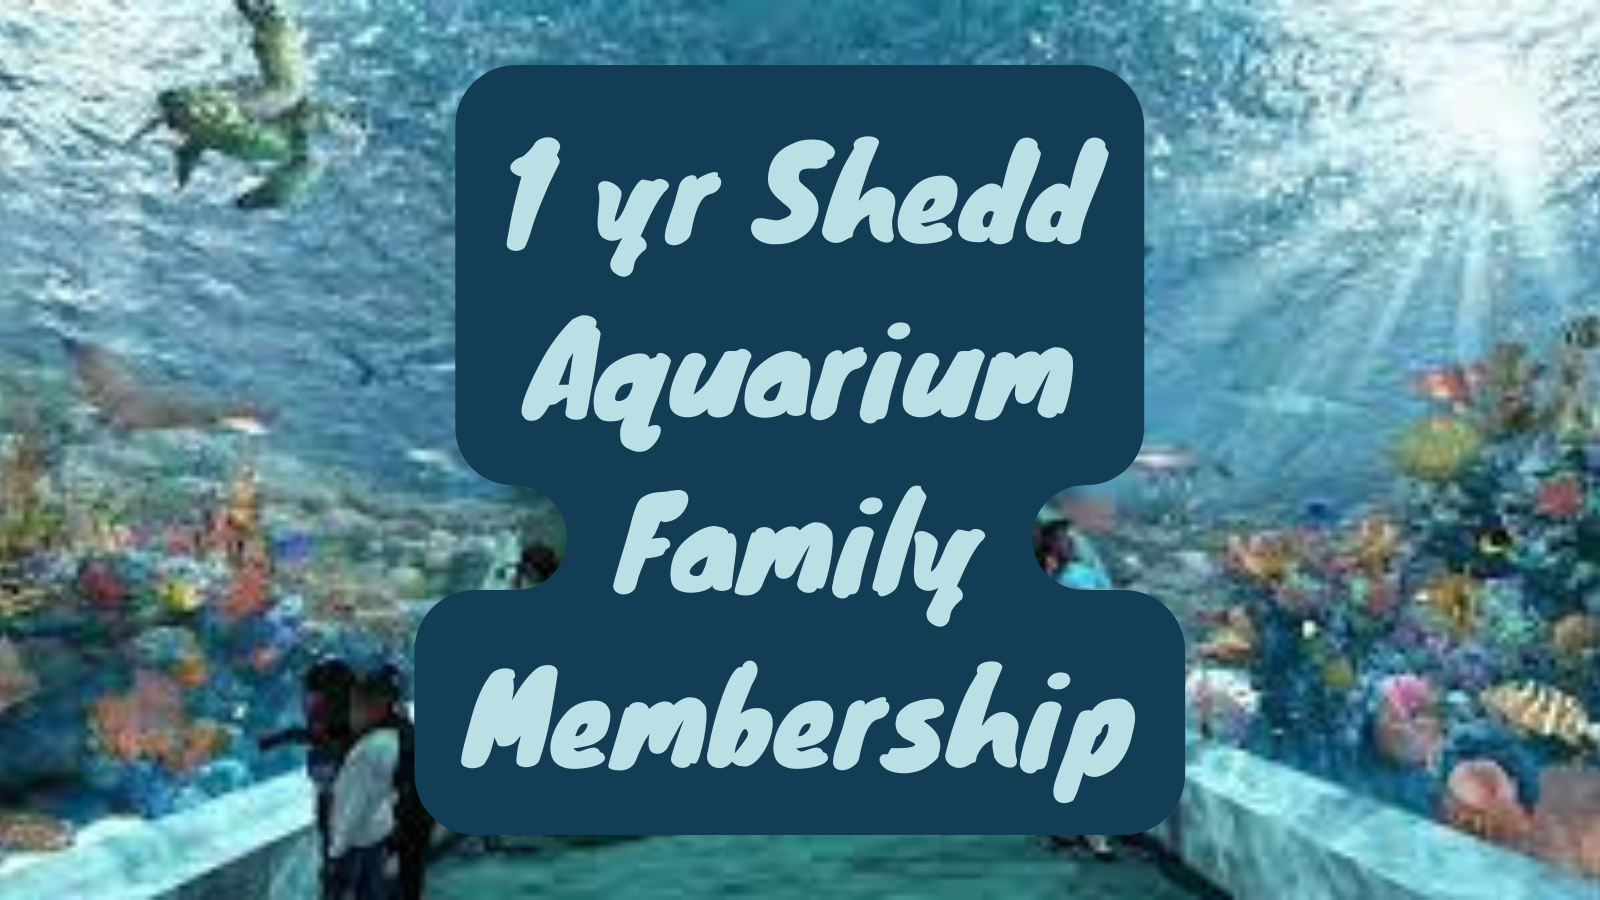 1 year Shedd Aquarium Family Membership